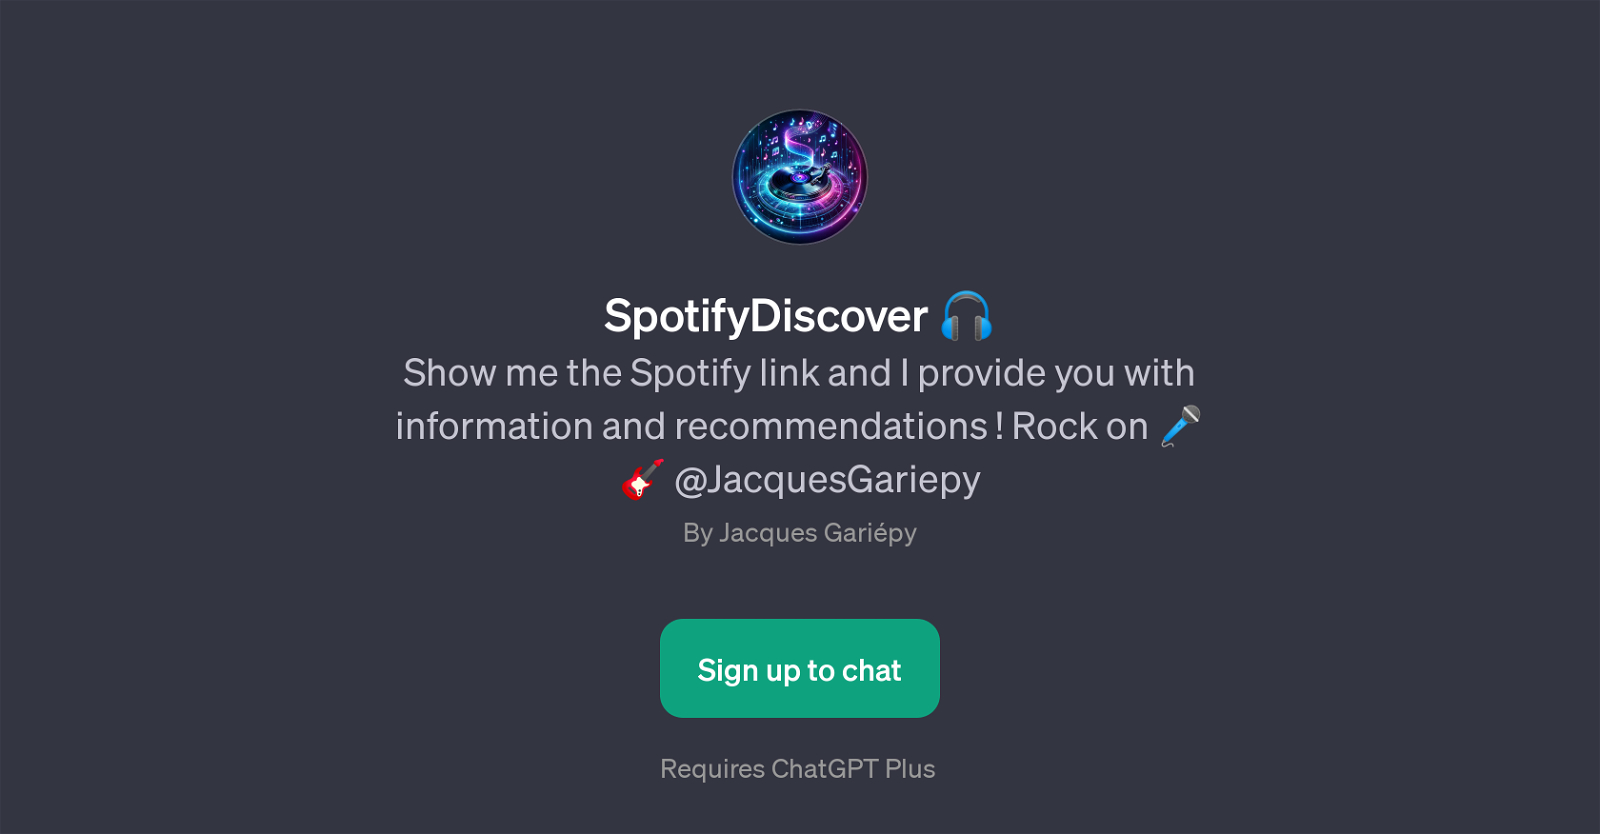 SpotifyDiscover website